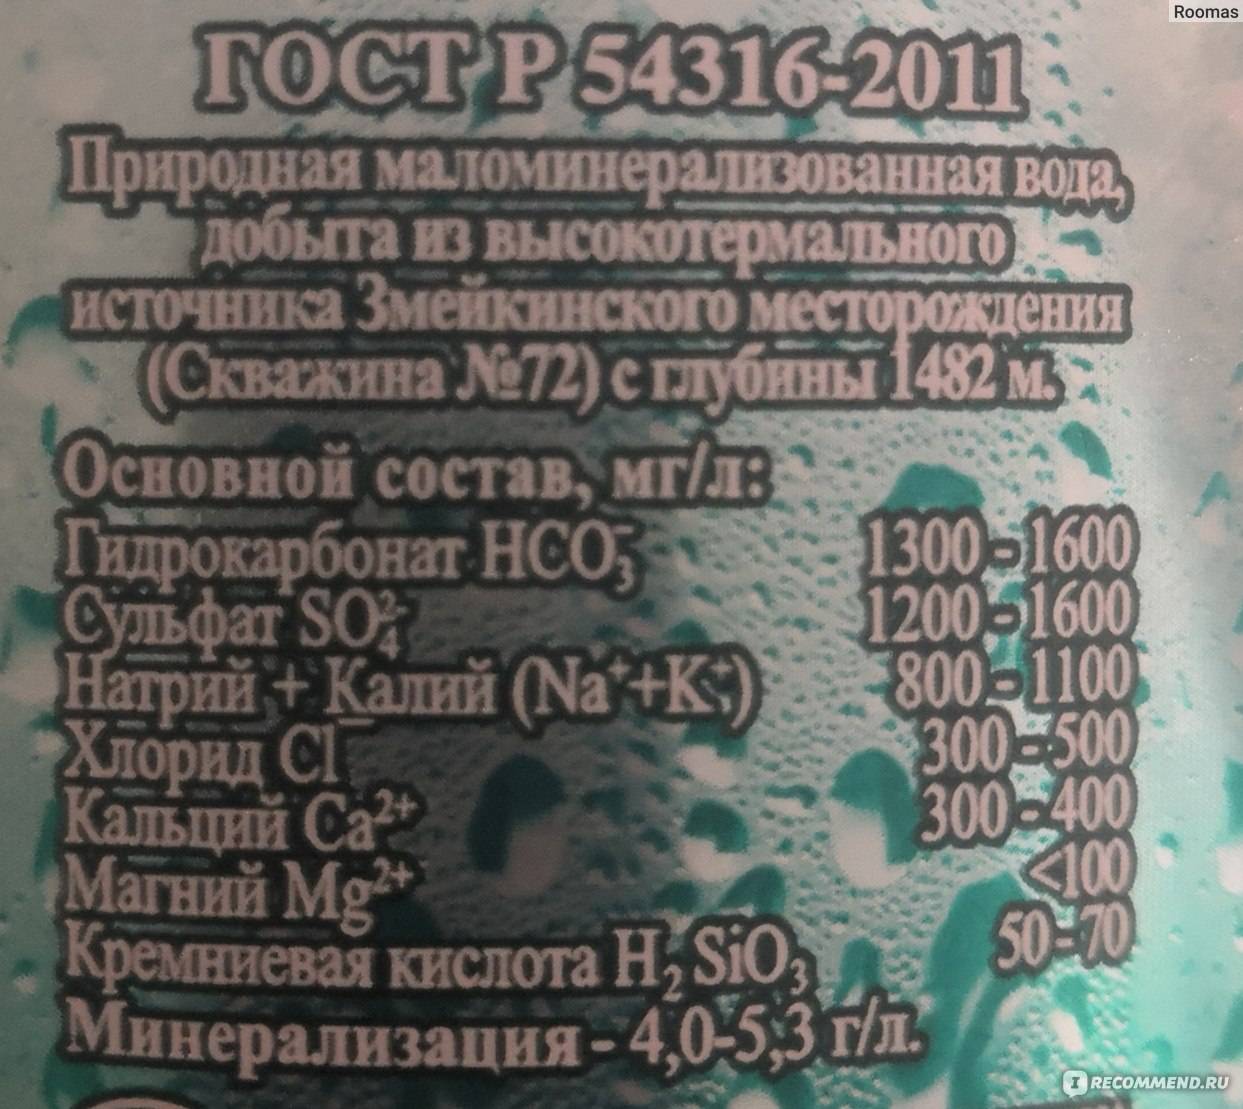 Рейтинг лучших марок минеральной воды в россии на 2022 год